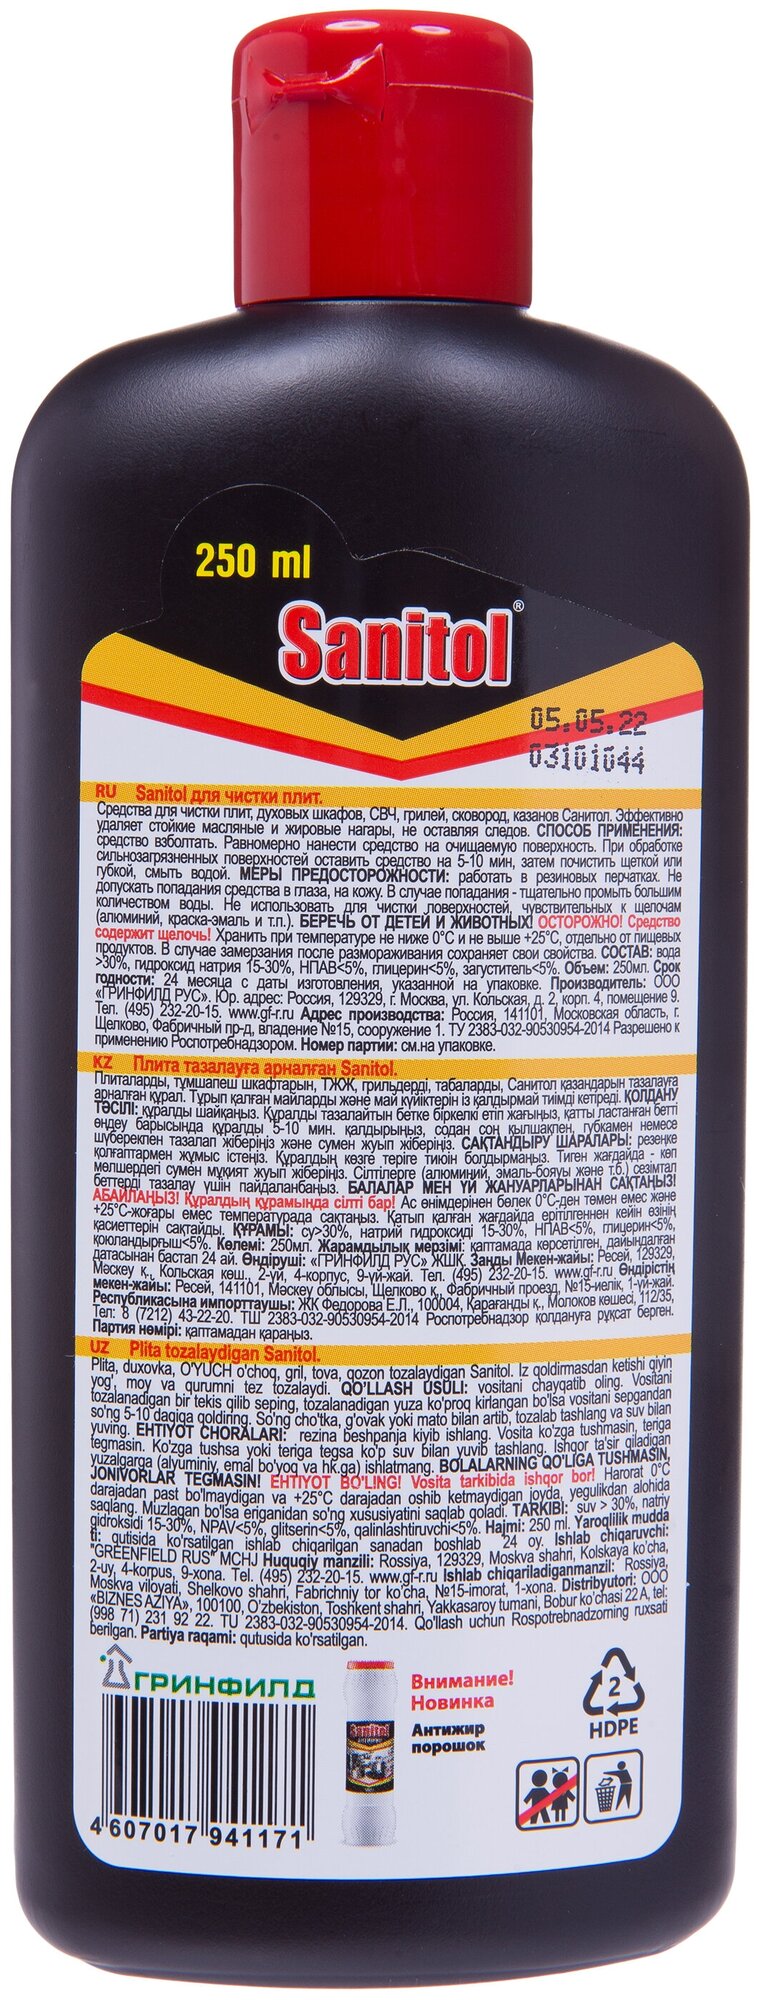 Sanitol / Средство для чистки плит, духовых шкафов, грилей, 2 ШТ. х 250 МЛ. - фотография № 5